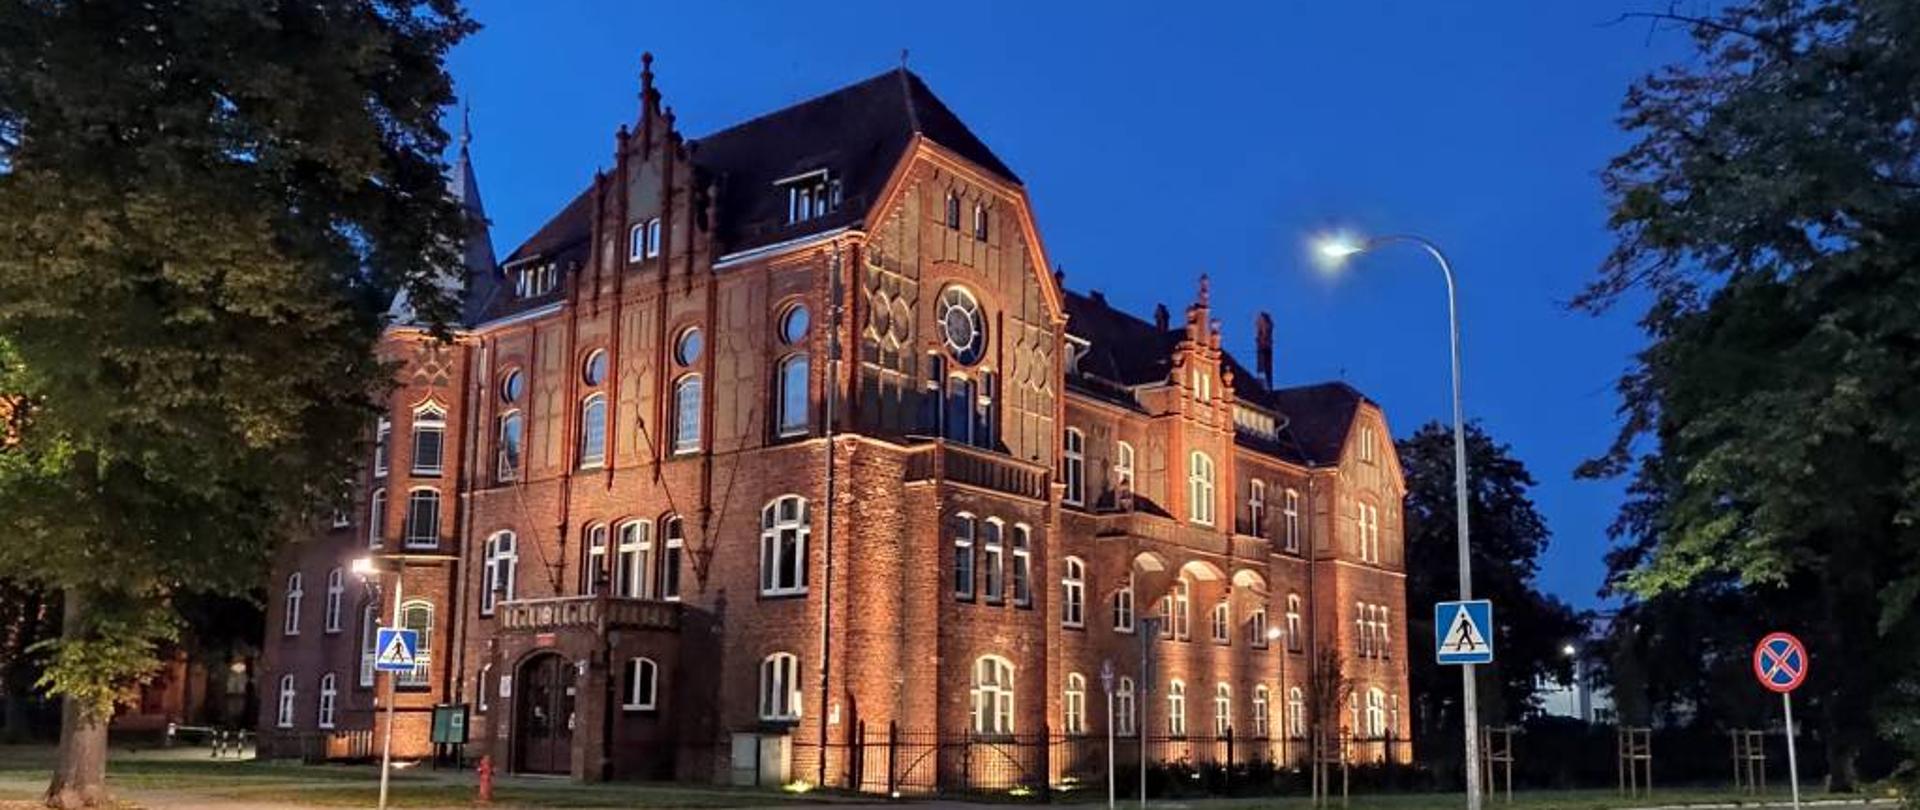 zdjęcie przedstawia od lewej strony oświetloną wieżę kościoła mariackiego w Szczecinku oraz oświetlony budynek szkoły muzycznnej na skrzyżowaniu ulic z czerwonej cegły nocą, na ciemno-niebieskim tle nieba. Po lewej i prawej stronie budynku zielone drzewa. Z prawej strony widoczne przejście dla pieszych